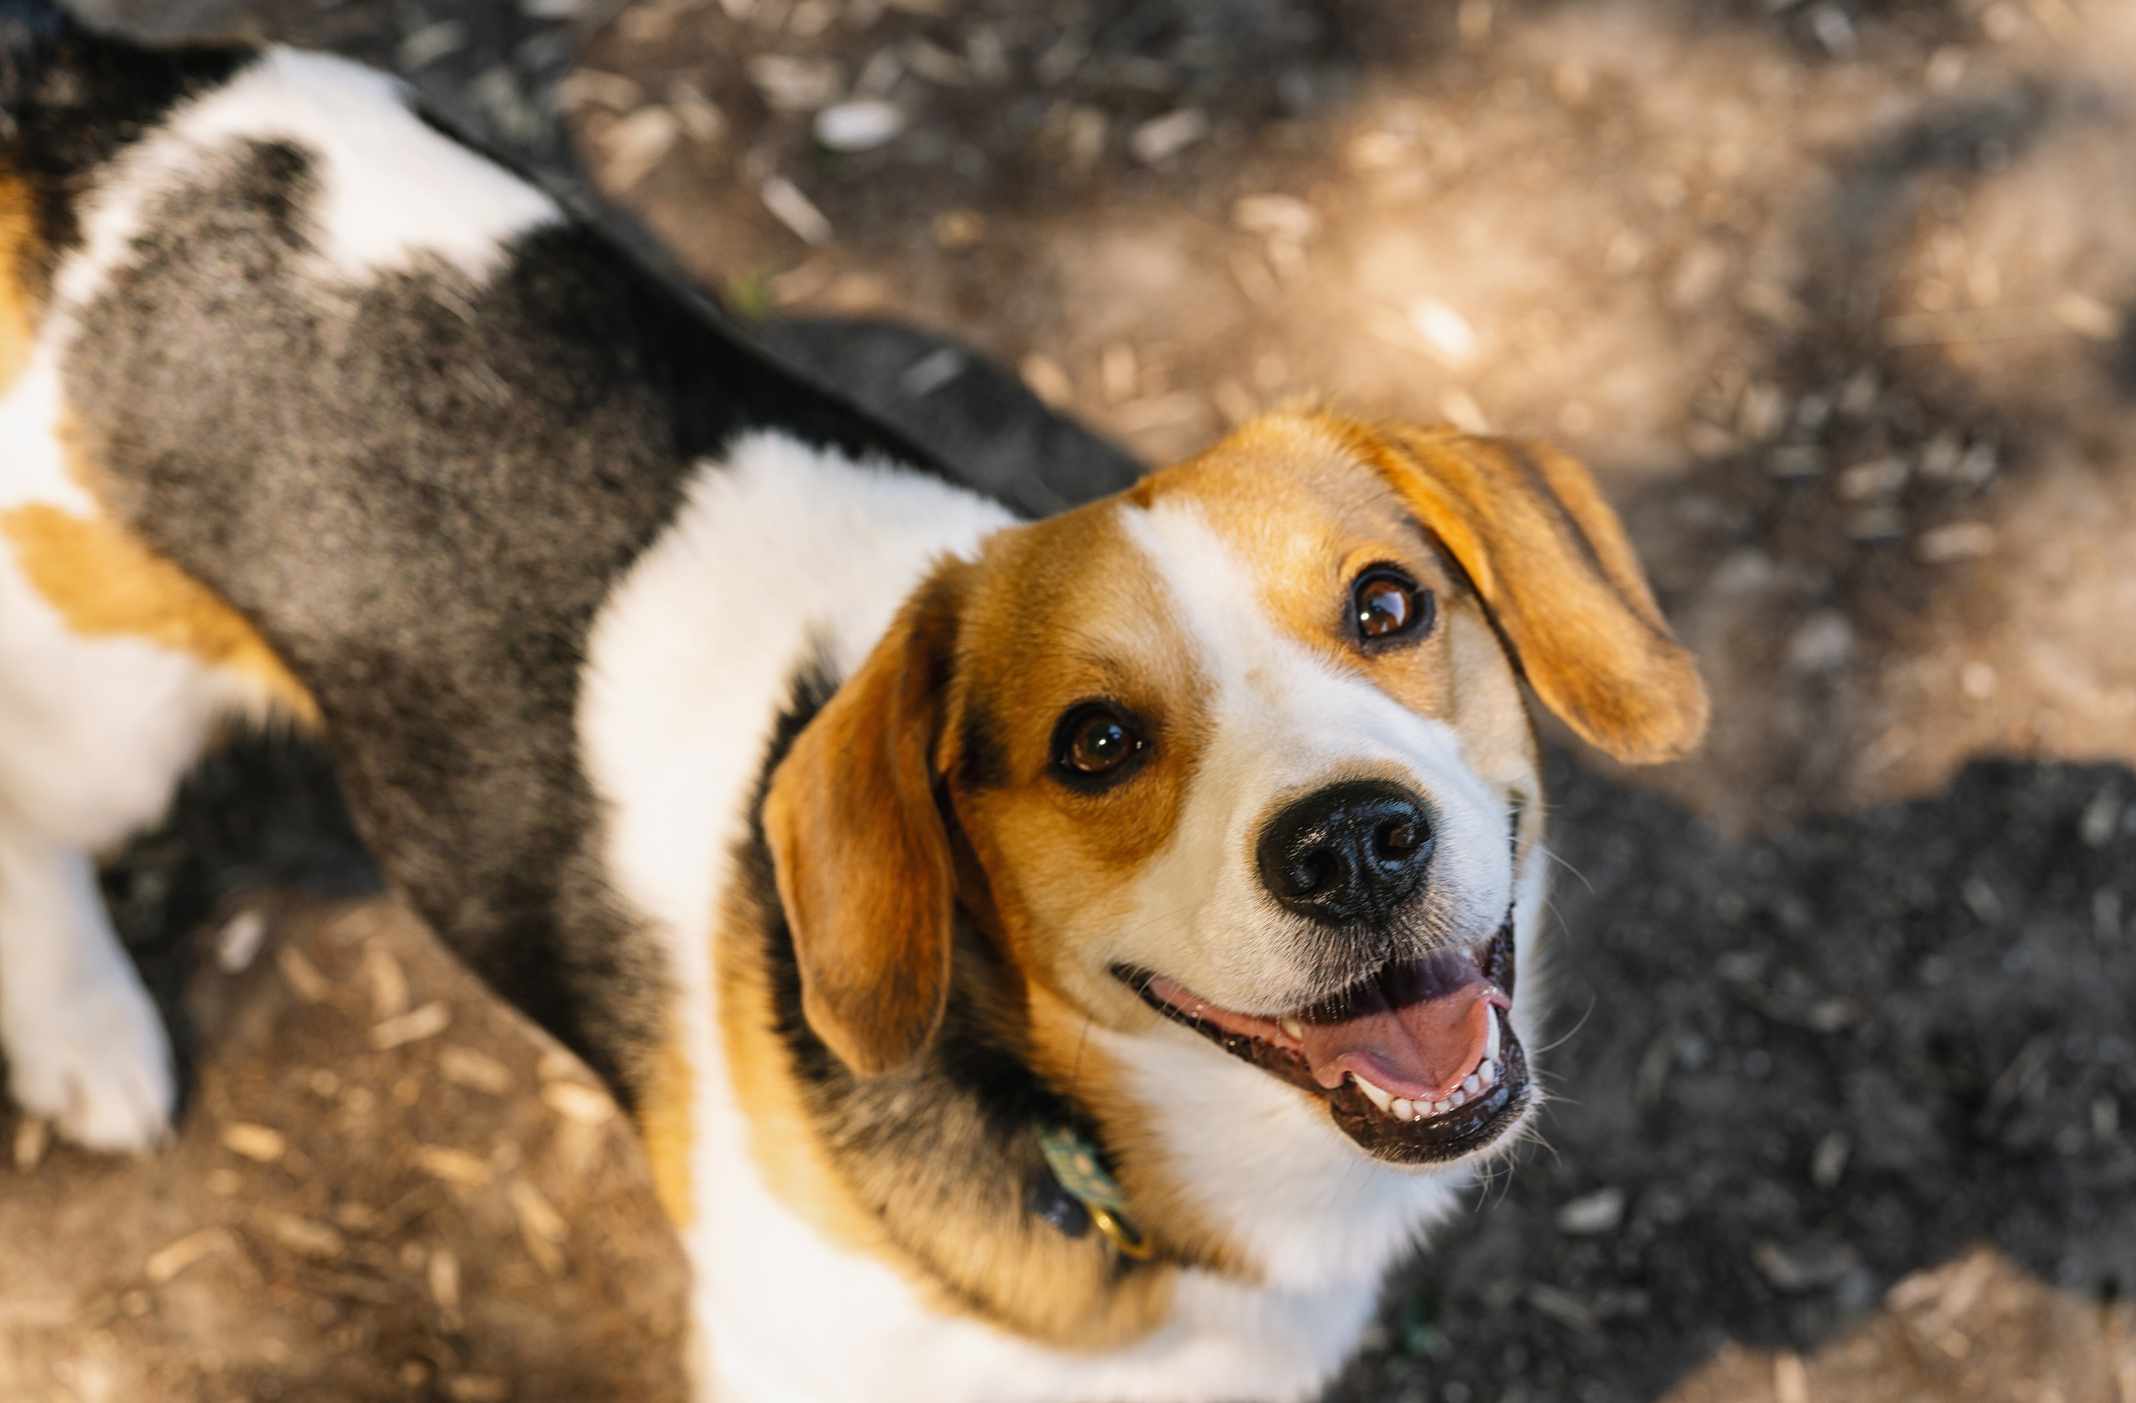 A Beagle smiling at the camera.